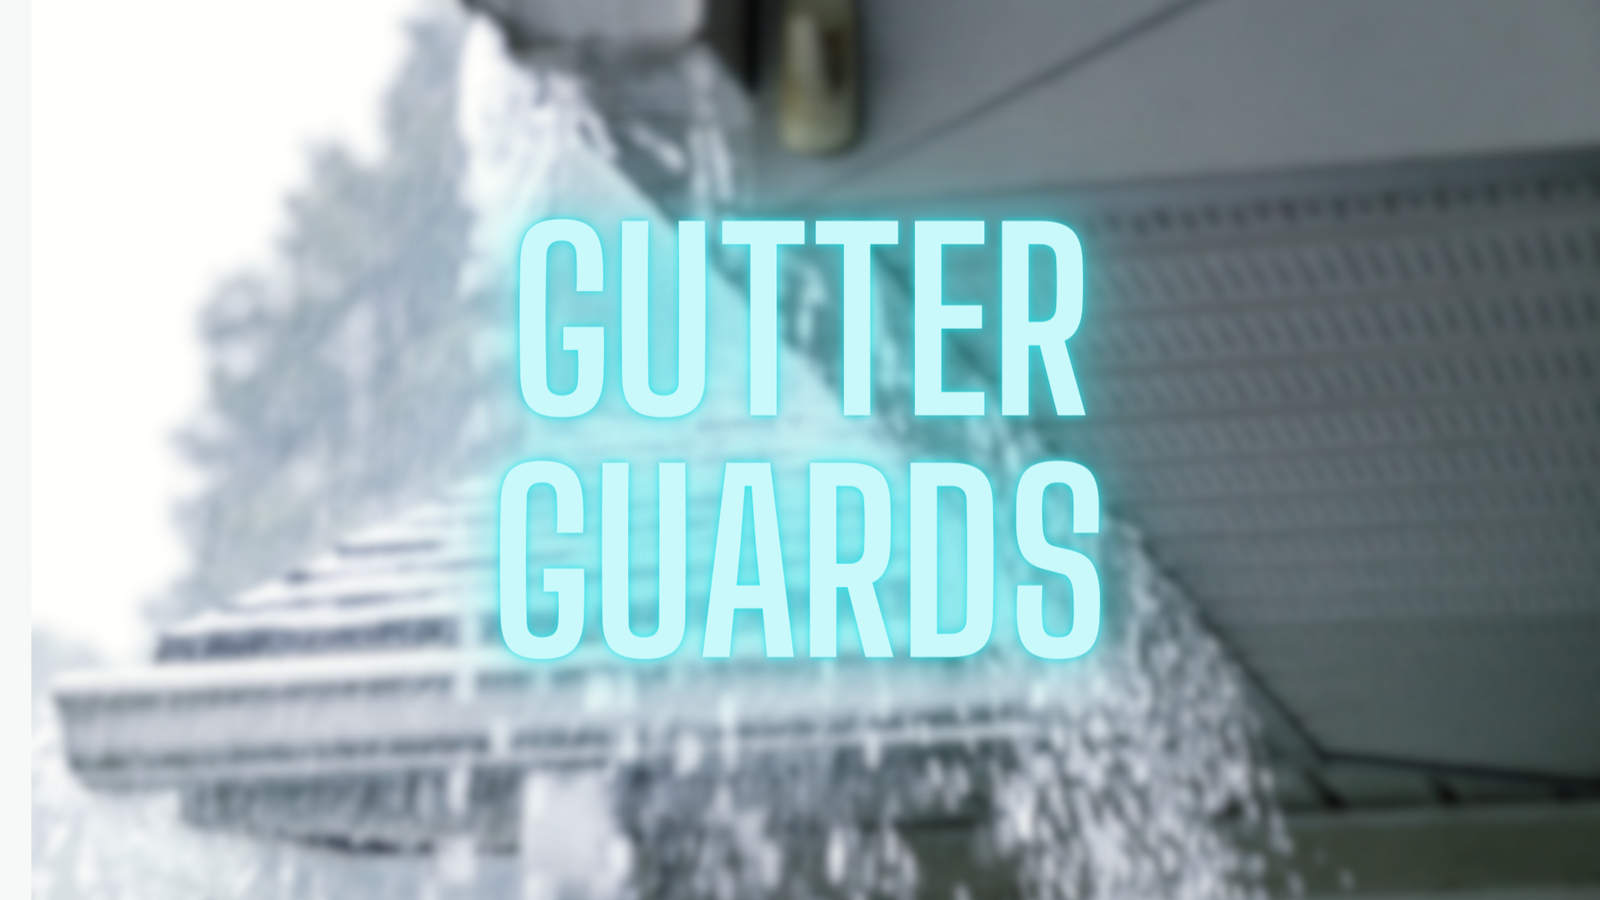 gutter guards